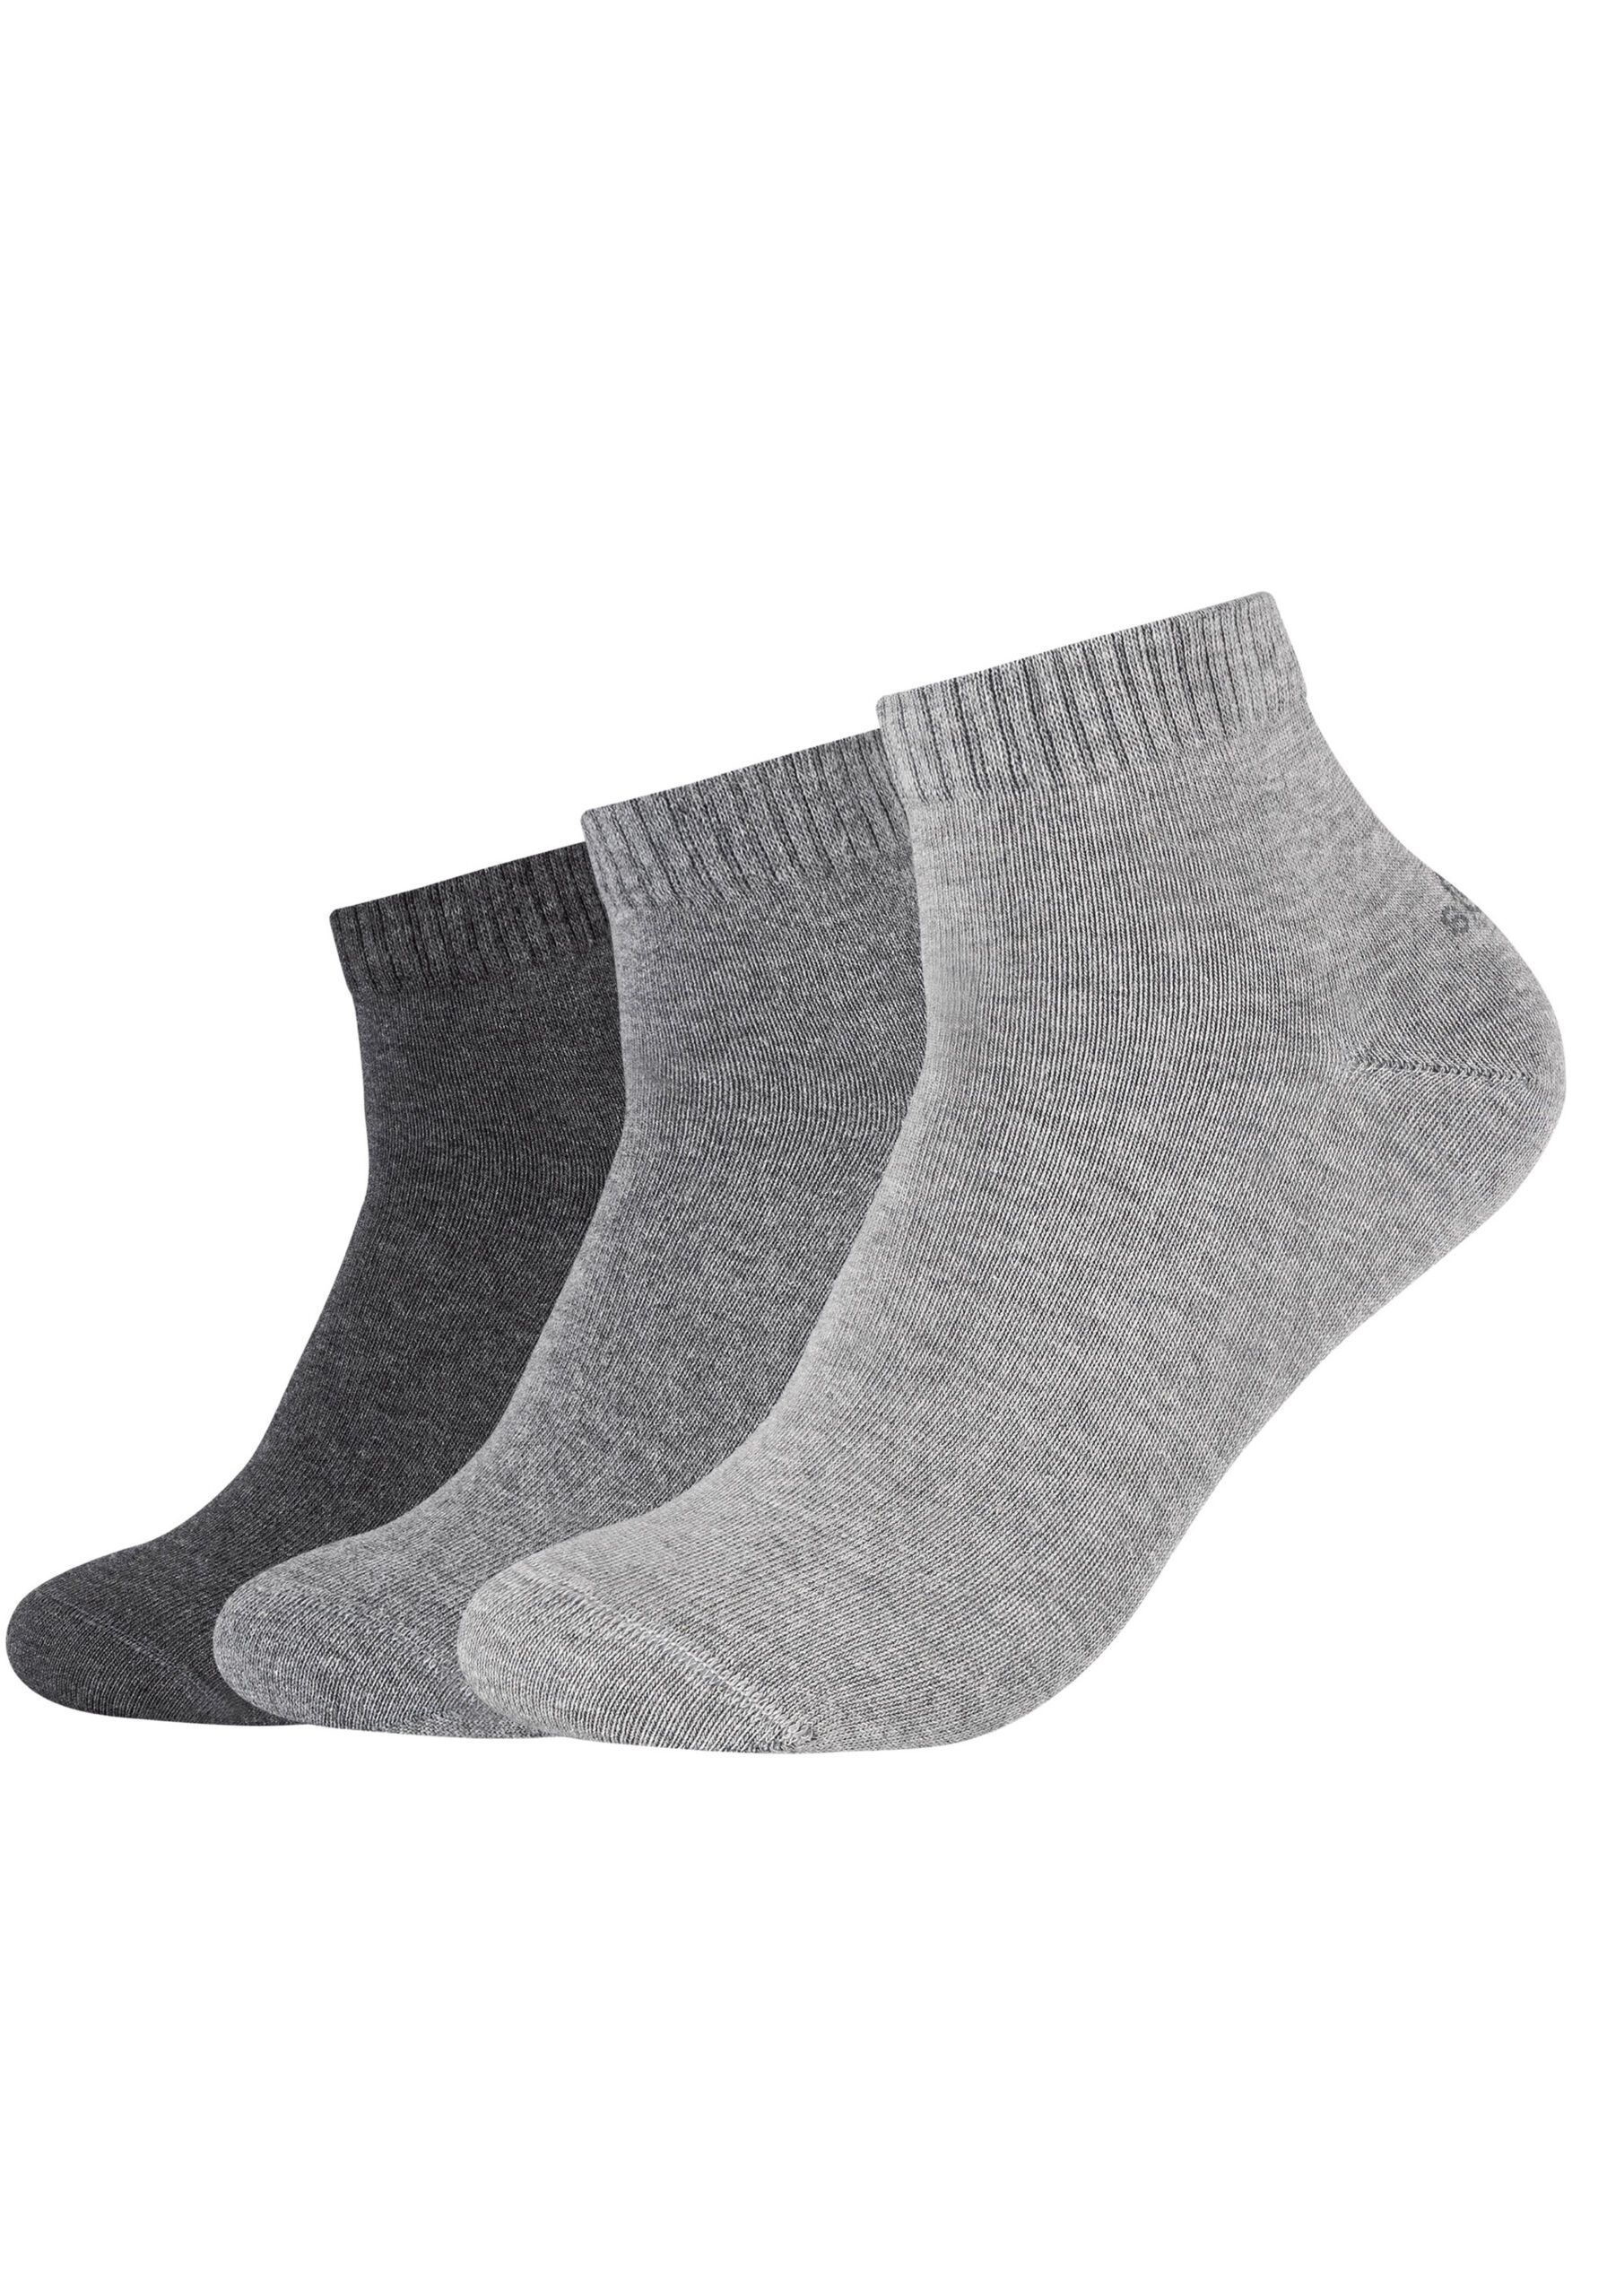 s.Oliver Unisex Sneaker Quarter Socken 3 Paar Anthrazit Grau - Sockenduo